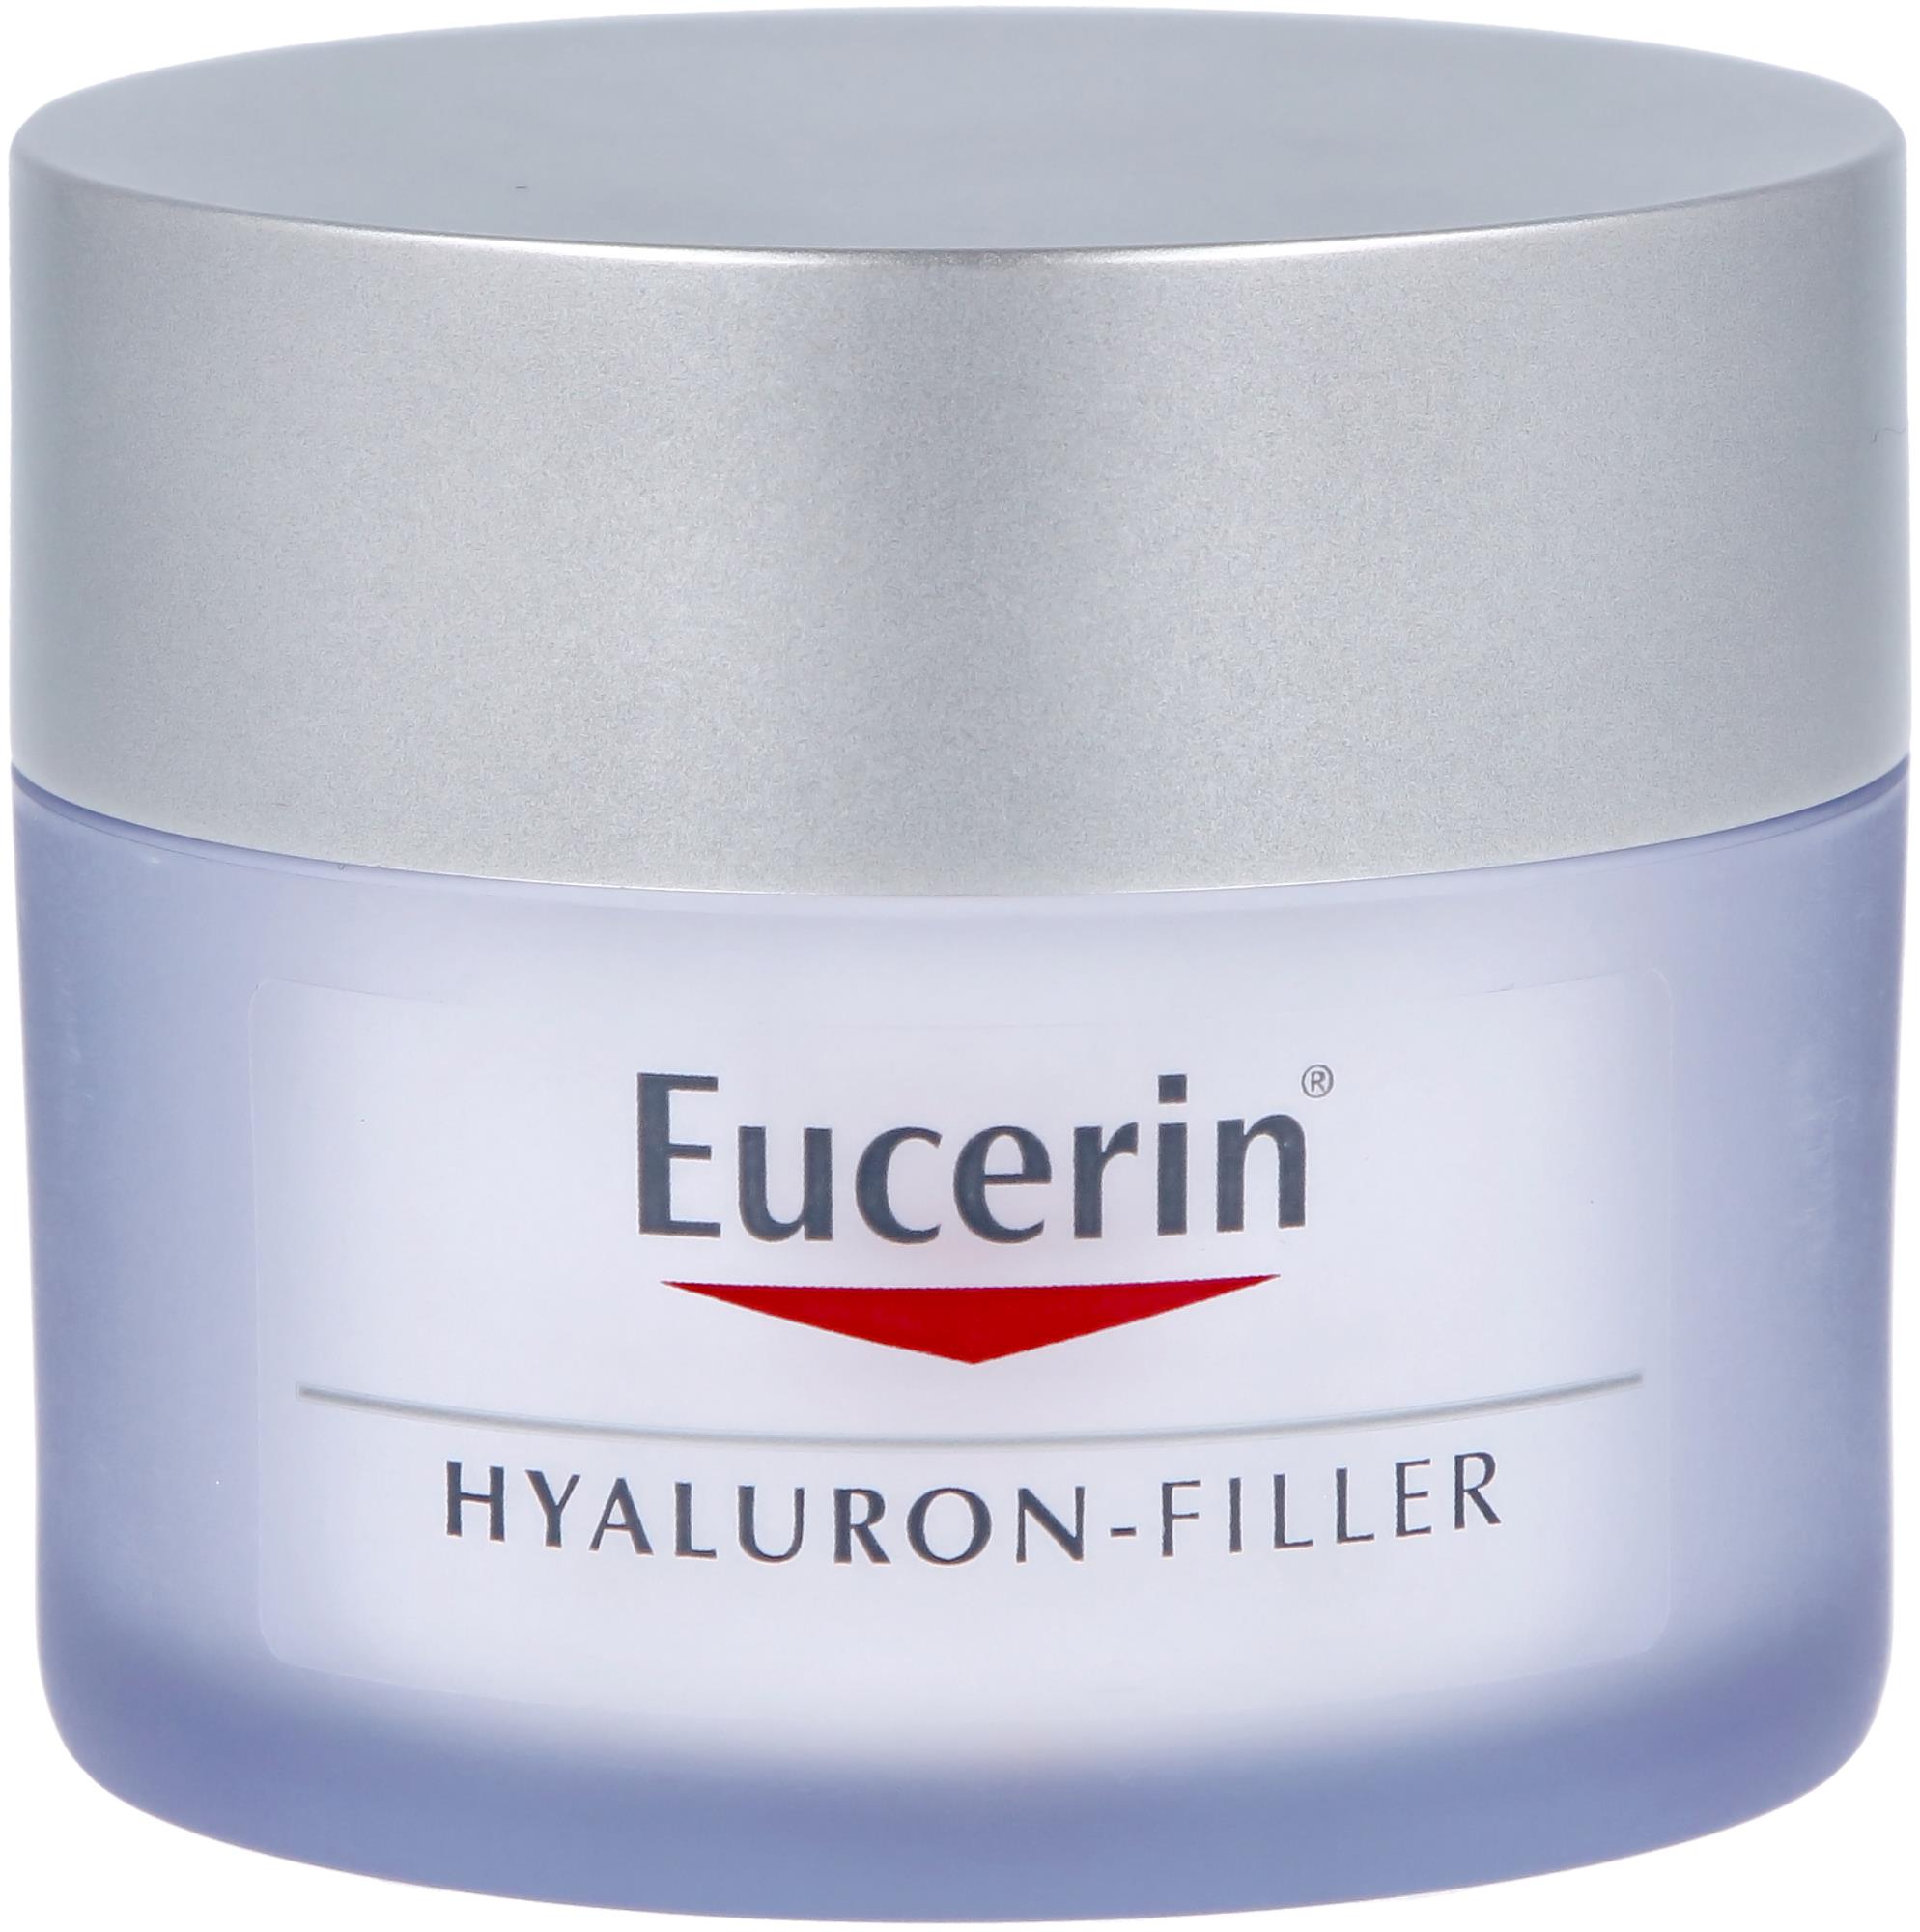 Eucerin Hyaluron-Filler Day Cream Spf30 | lyko.com